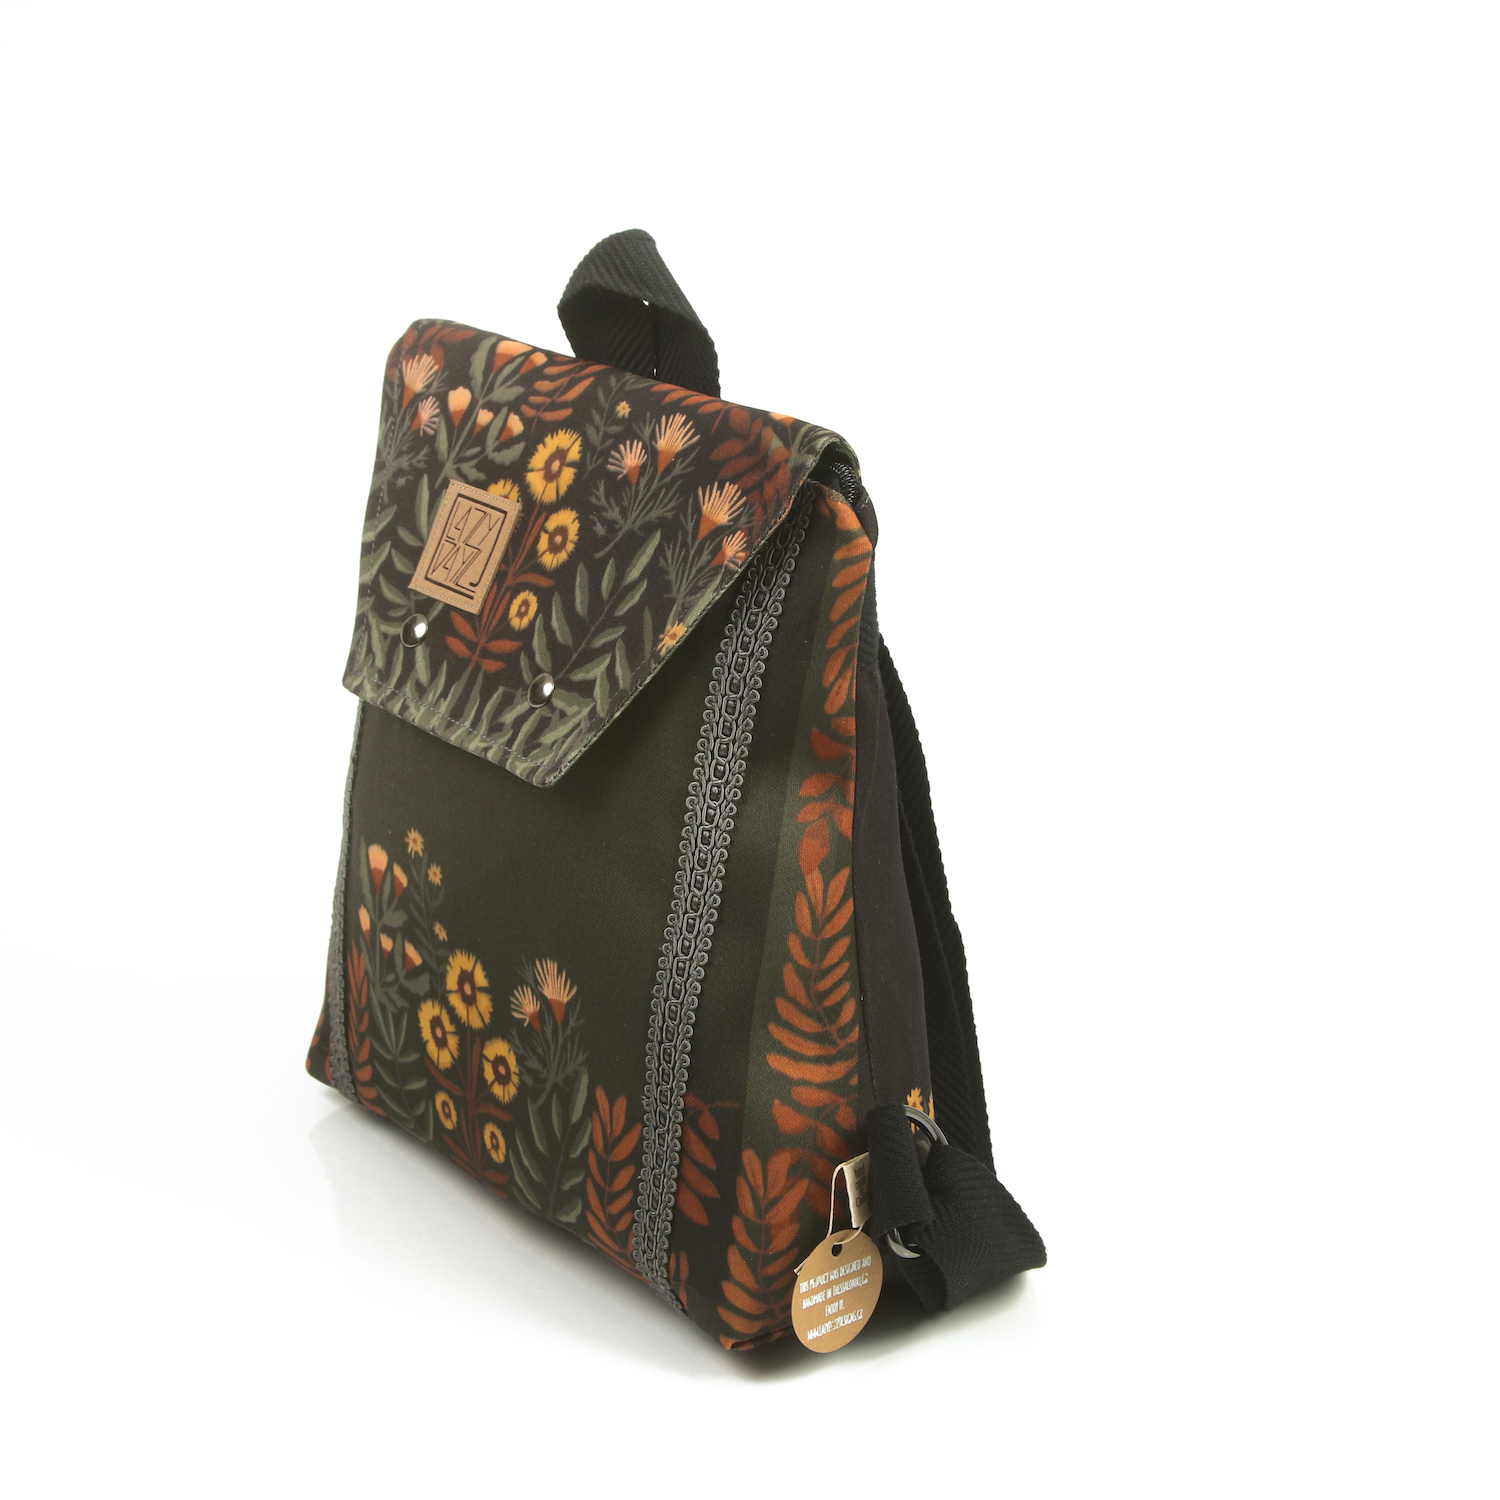 LazyDayz Designs Backpack γυναικείος σάκος πλάτης χειροποίητος bb0305b